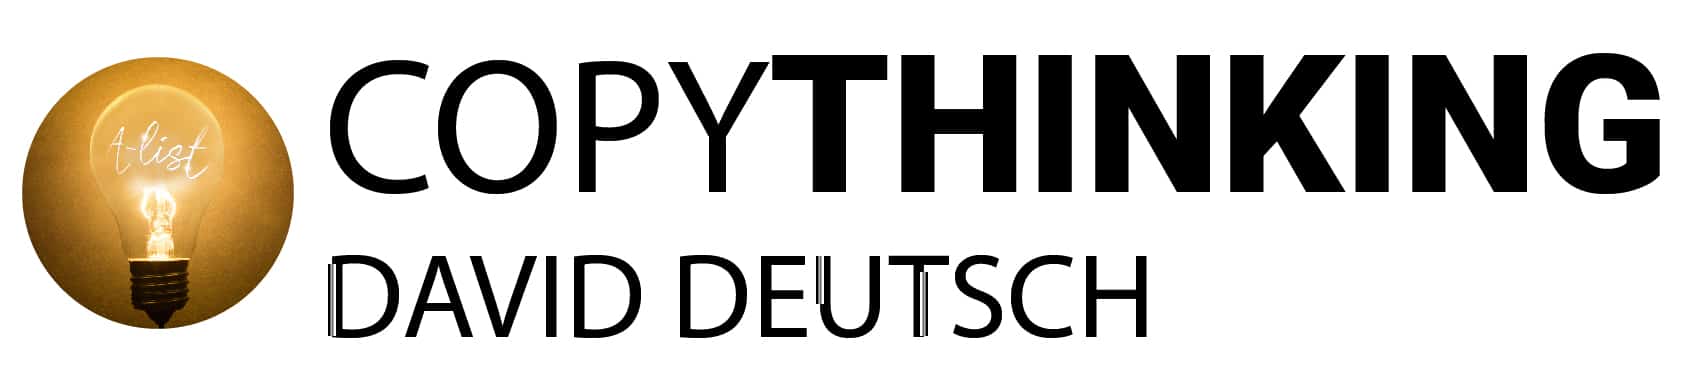 David Deutsch's A-List Copywriting Secrets logo